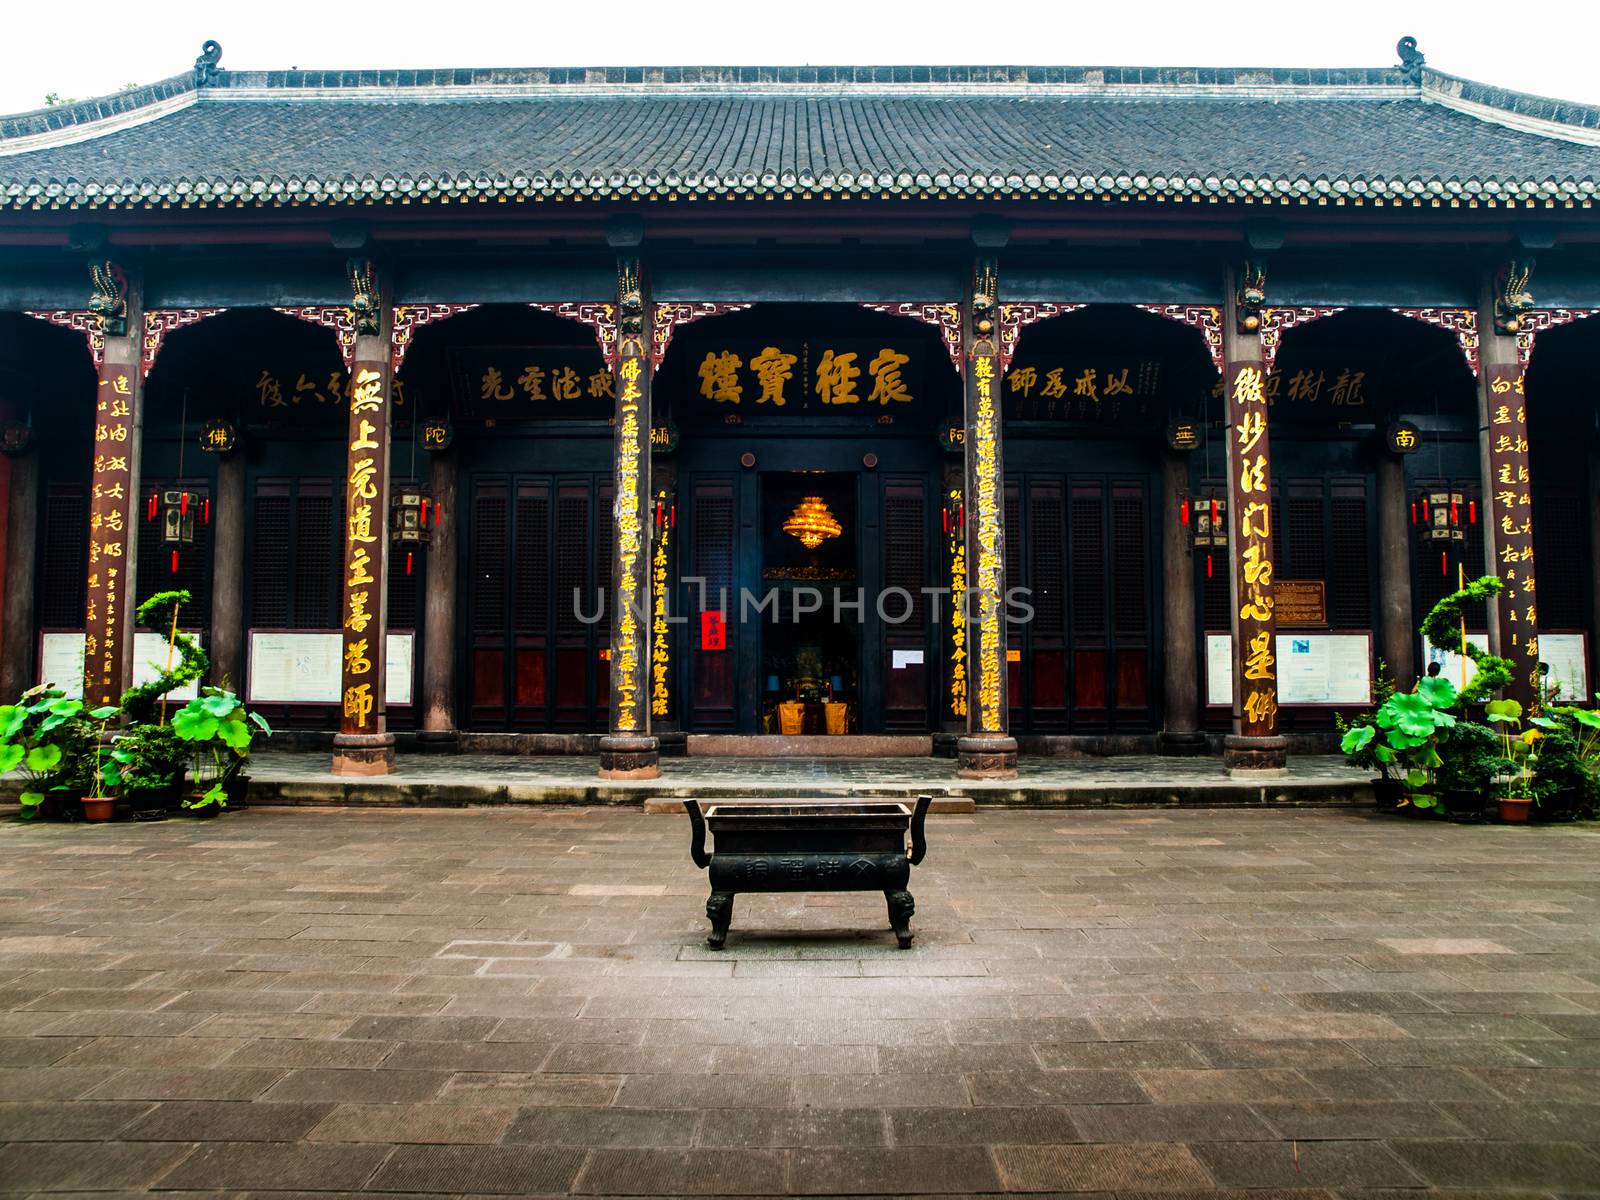 Wenshu monastery (Chengdum Sichuan, China)